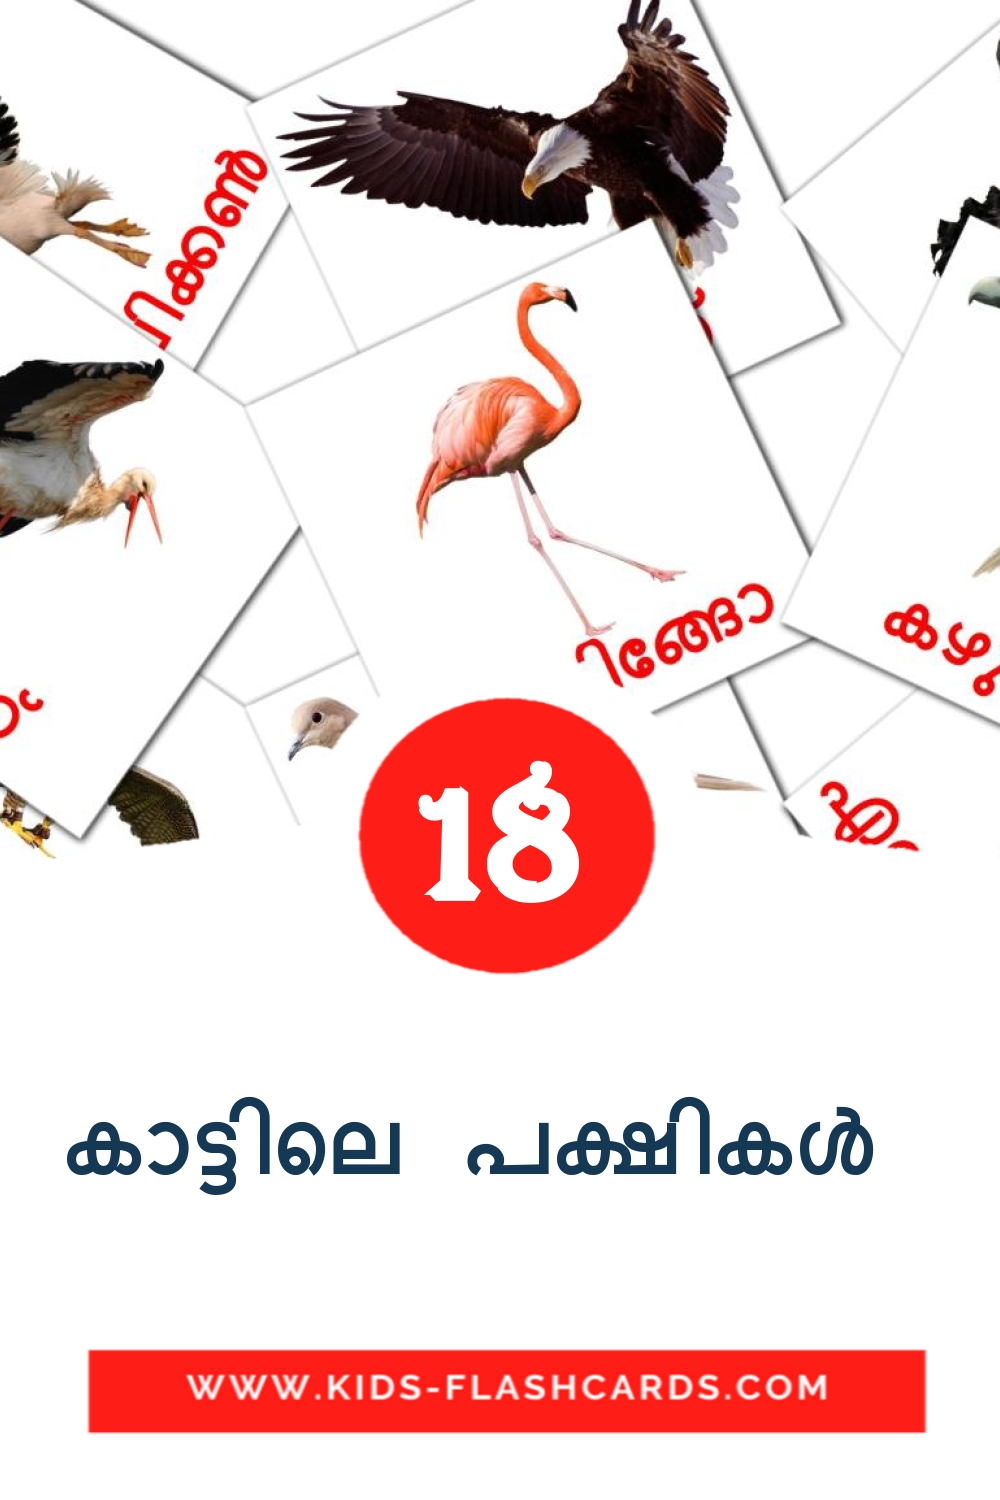 18 carte illustrate di കാട്ടിലെ പക്ഷികൾ  per la scuola materna in malayalam